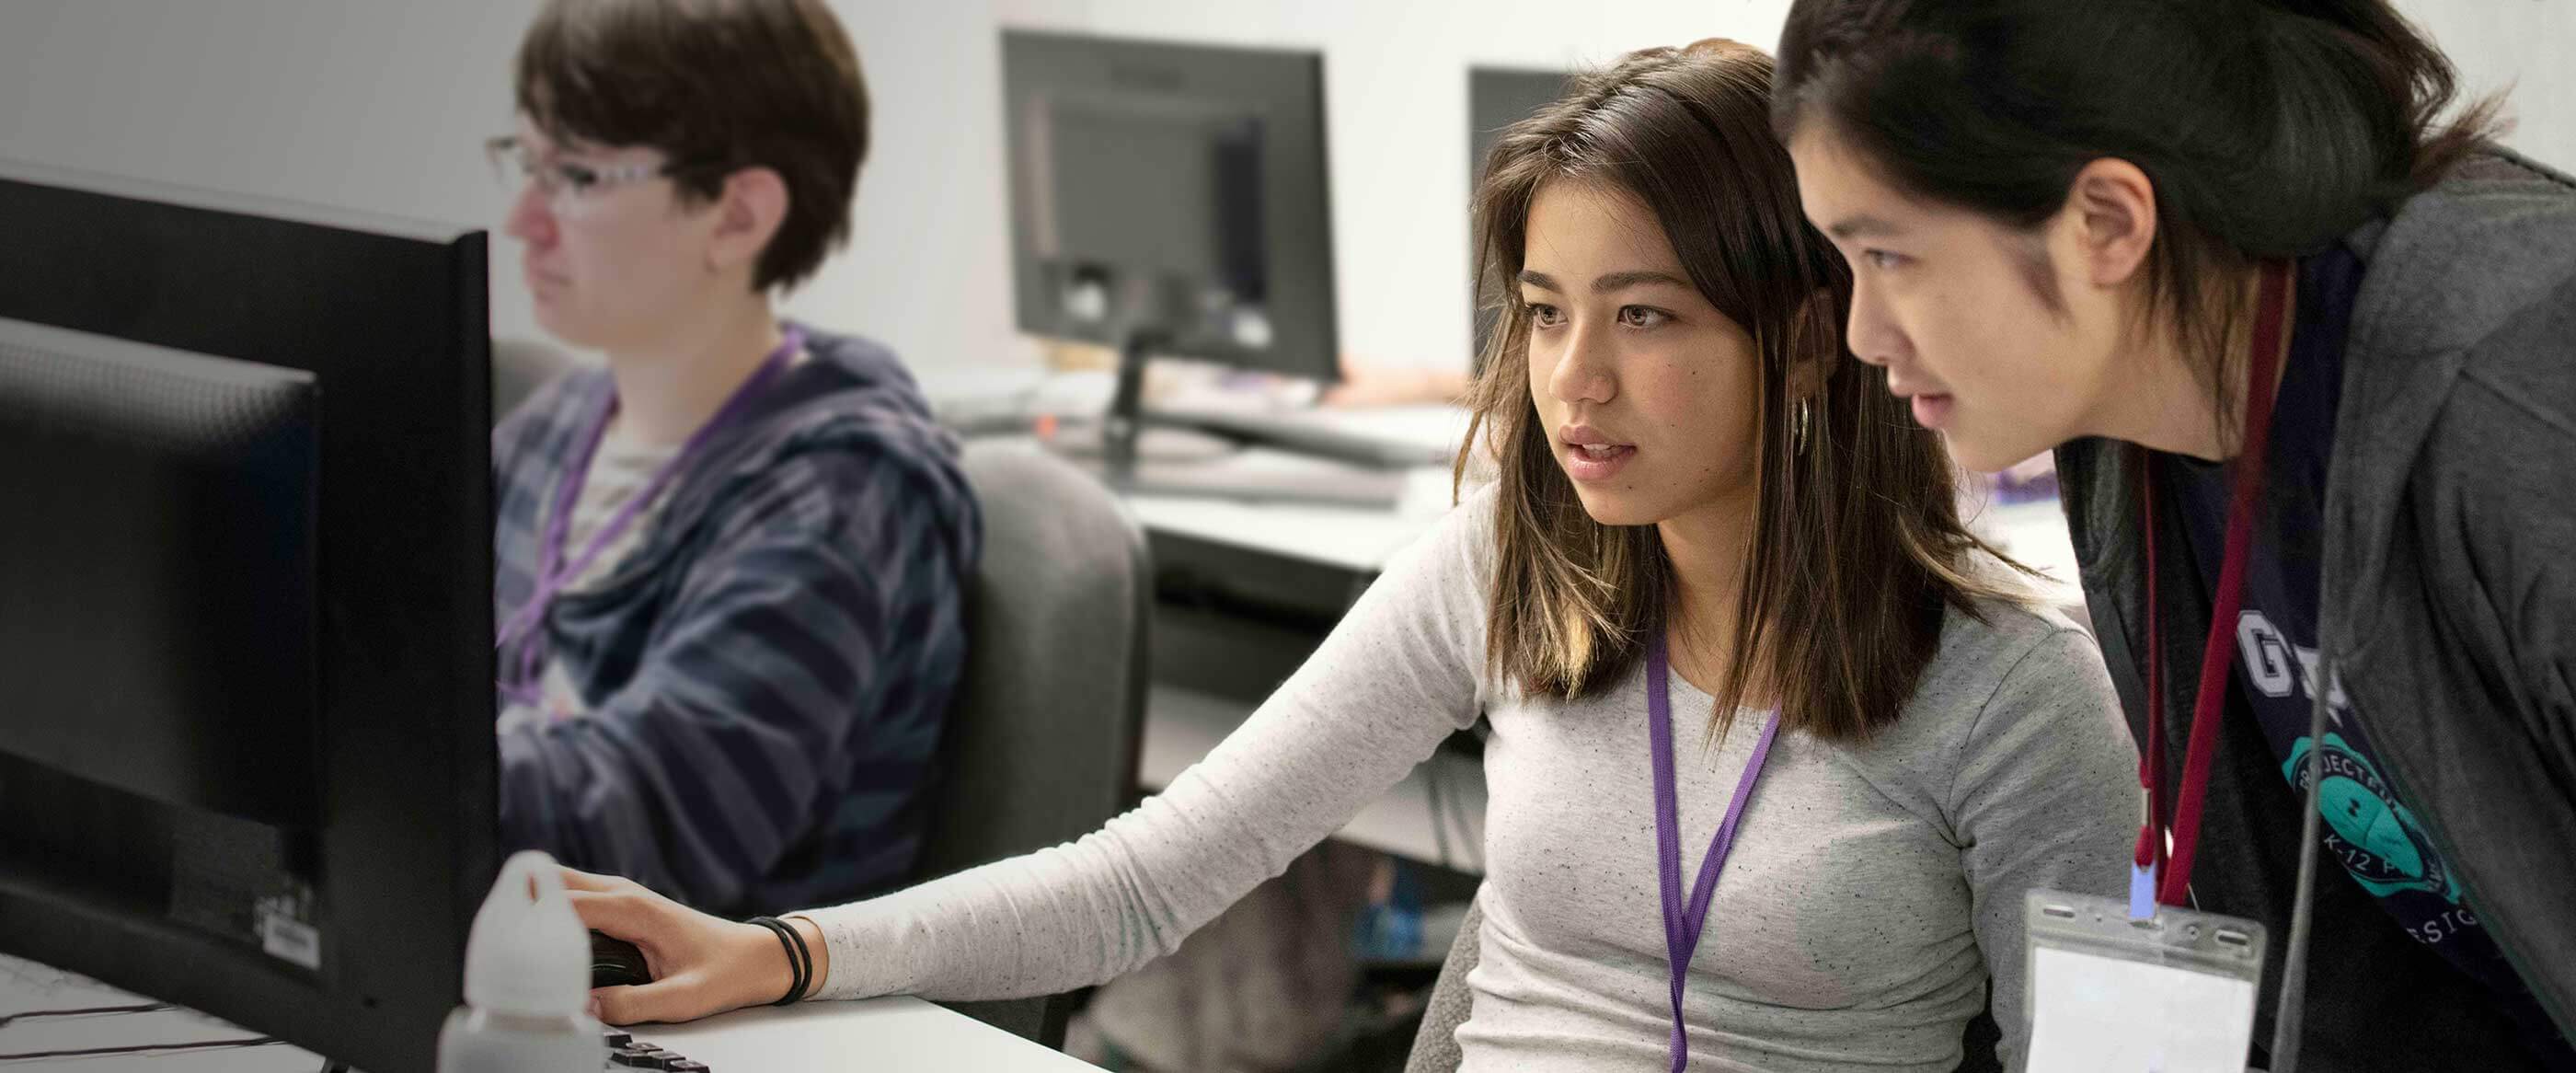 Una alumna sentada frente a un monitor de ordenador con un instructor ayudandole mientras se apoya en su hombro